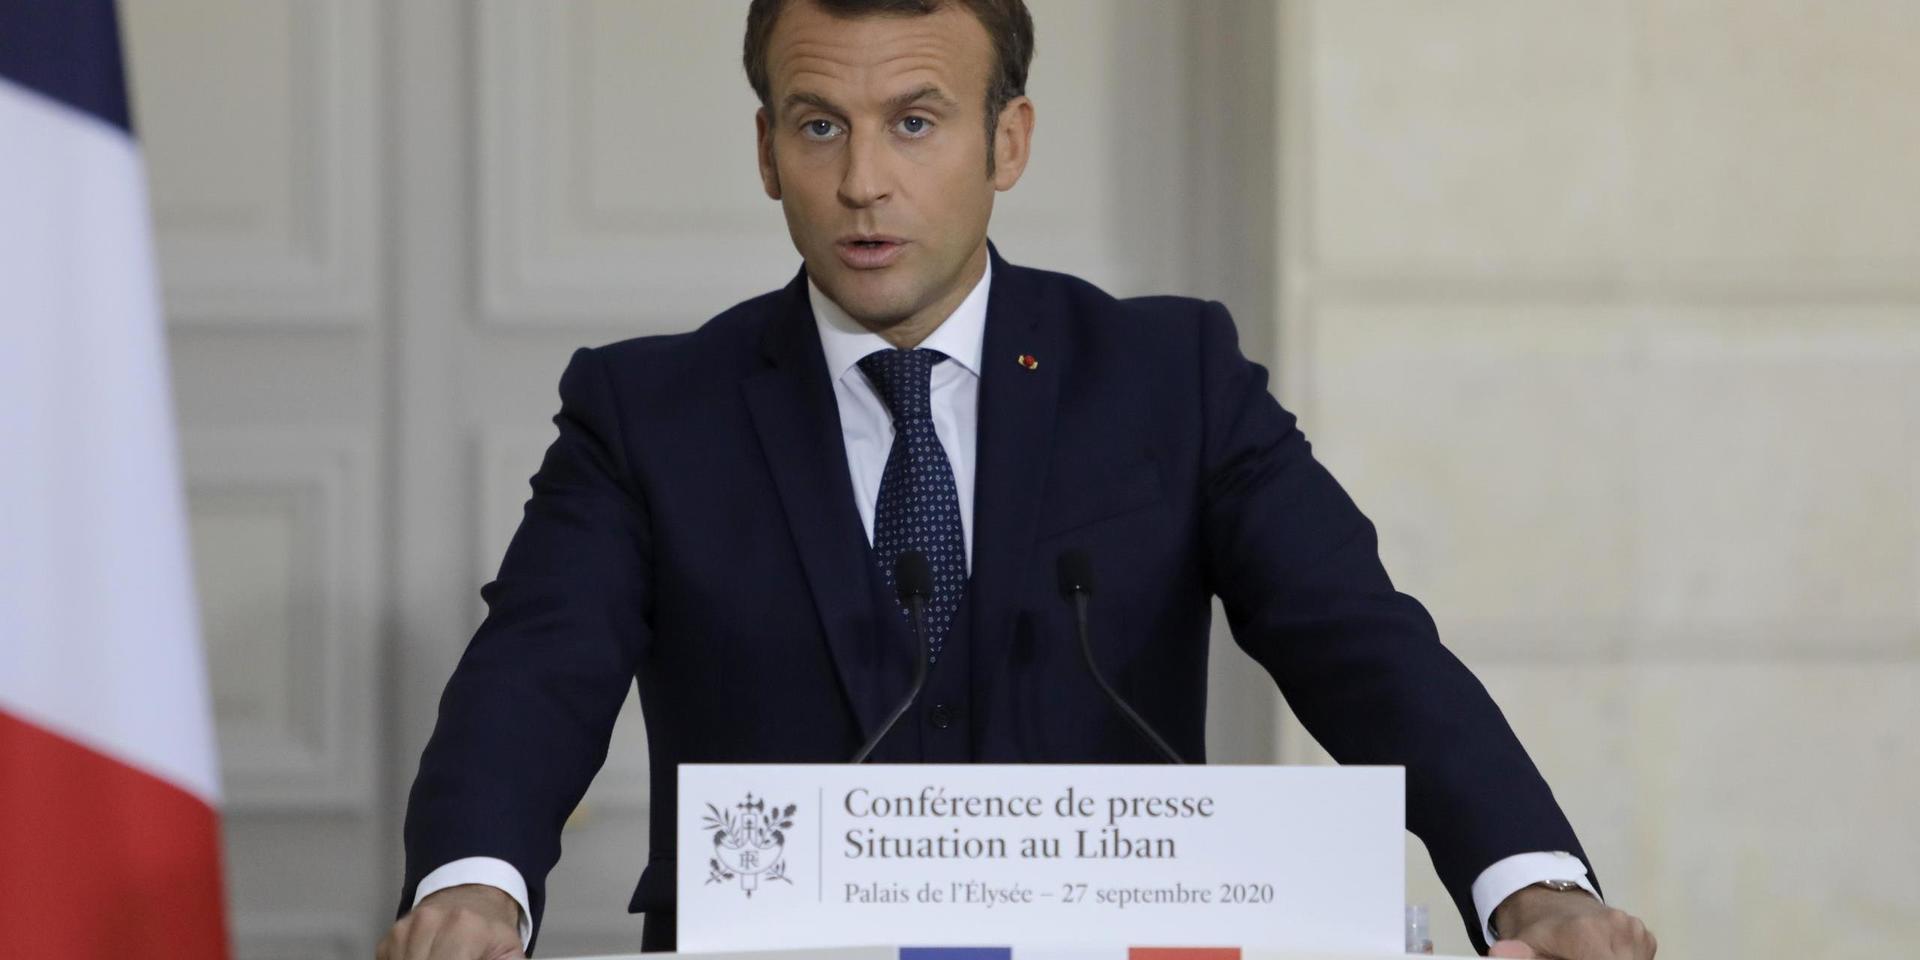 Under en presskonferens särskilt tillägnad situationen i Libanon på söndagskvällen riktade Frankrikes president mycket hård kritik mot landets politiska ledare.